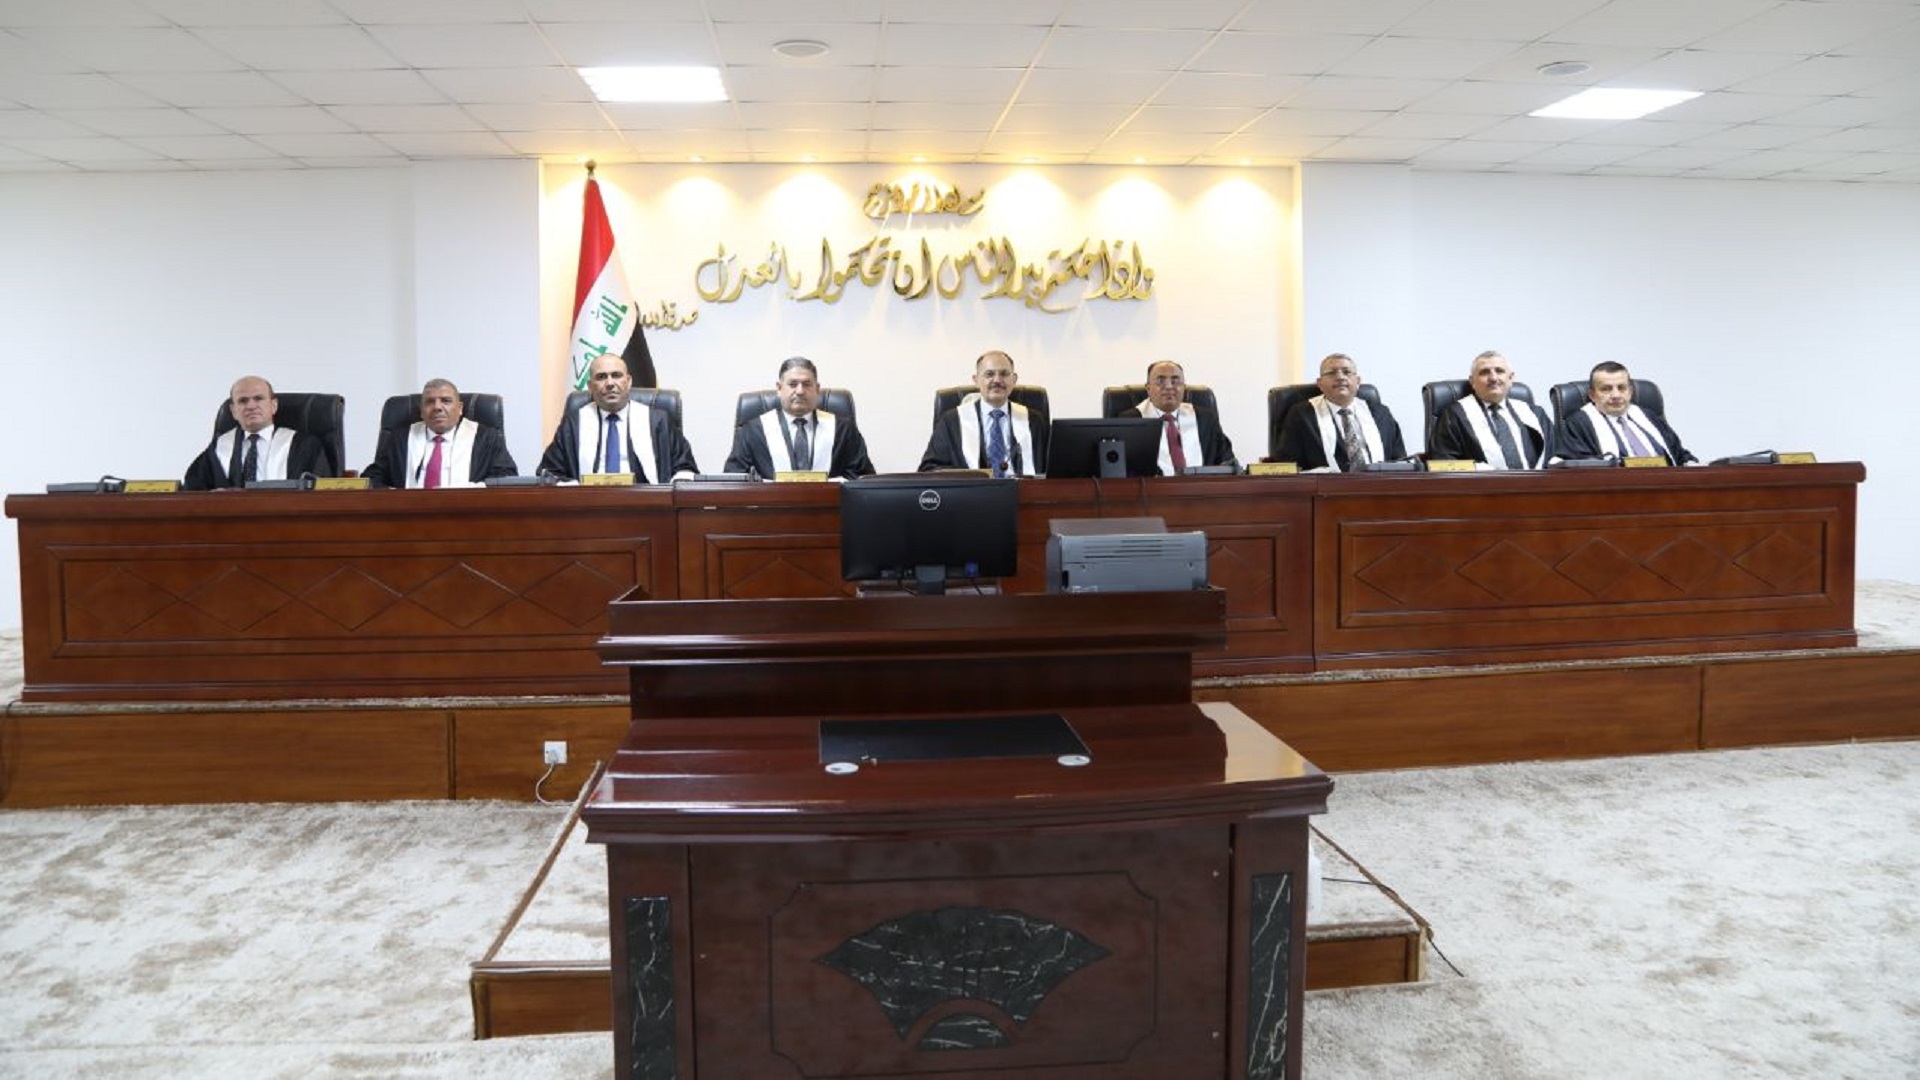 رئيس وأعضاء المحكمة الاتحادية العليا في العراق